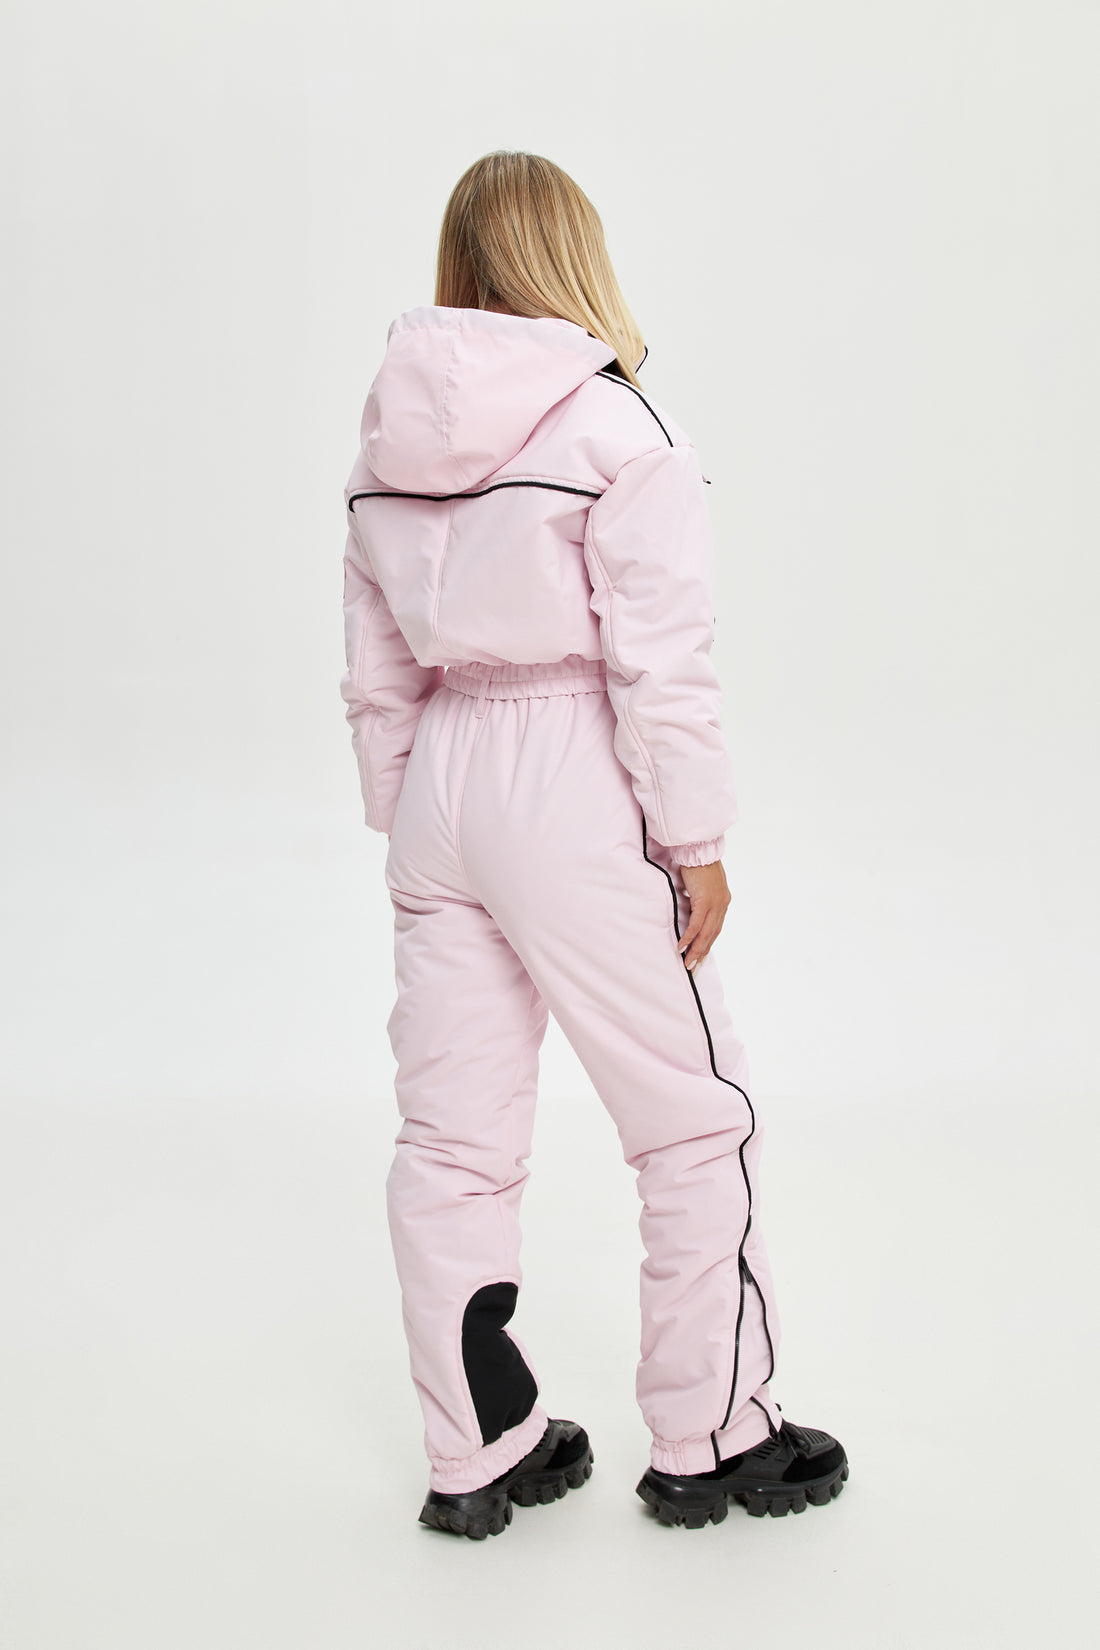 Blush pink ski suit BLANC - BLUSH PINK with black edging - Waterproof membrana snowsuit